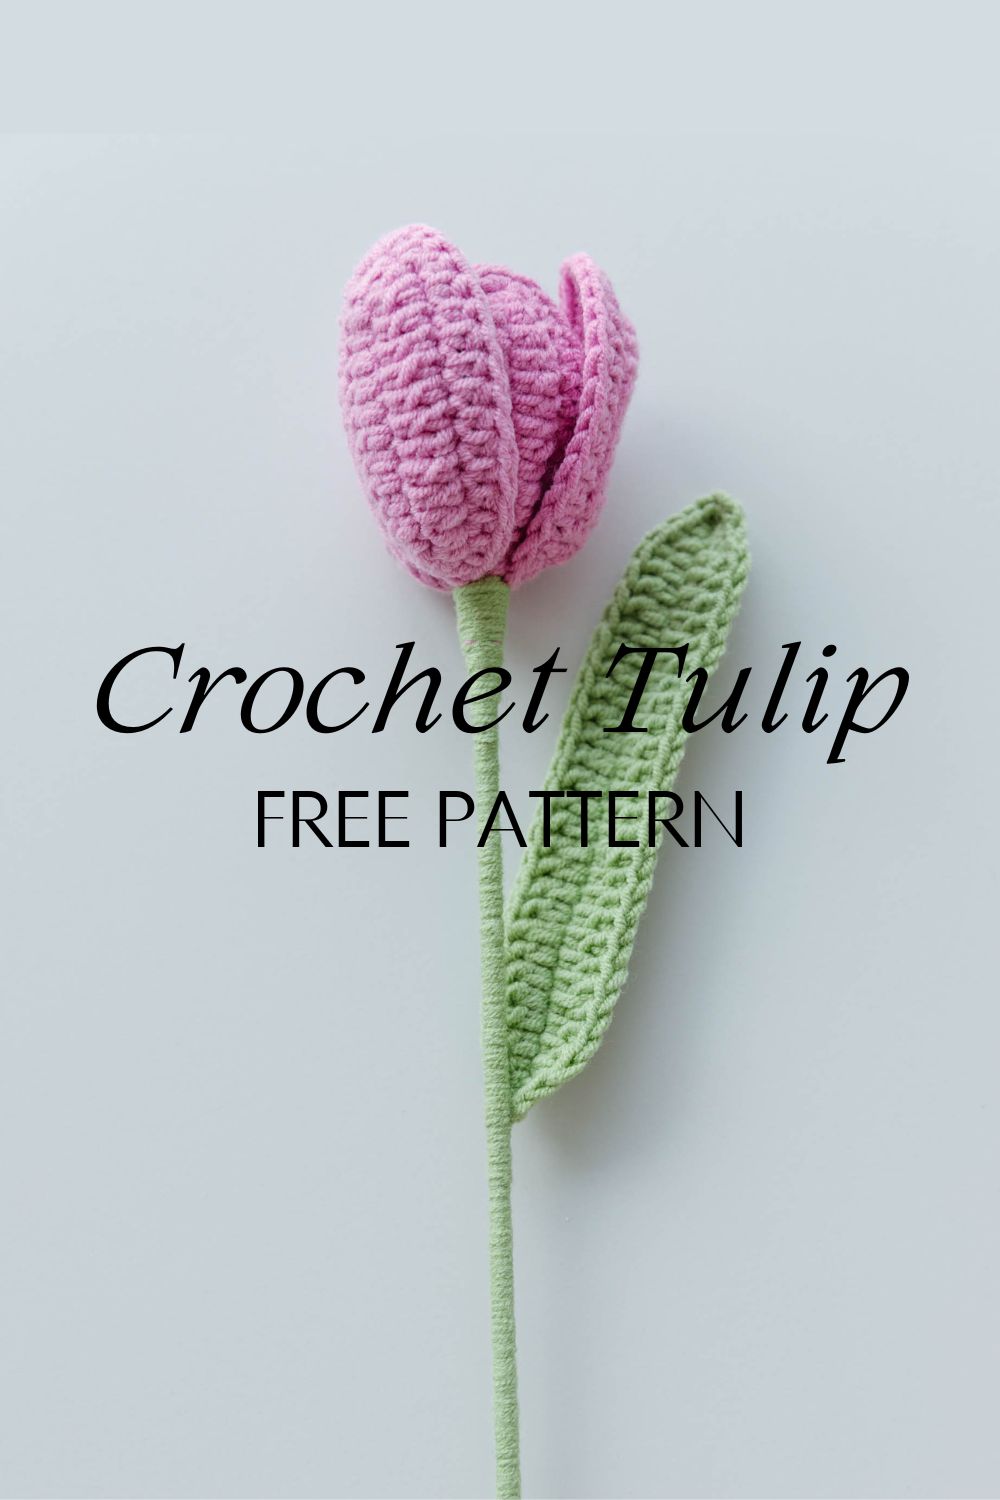 Handmade Crochet Tulips丨Pattern